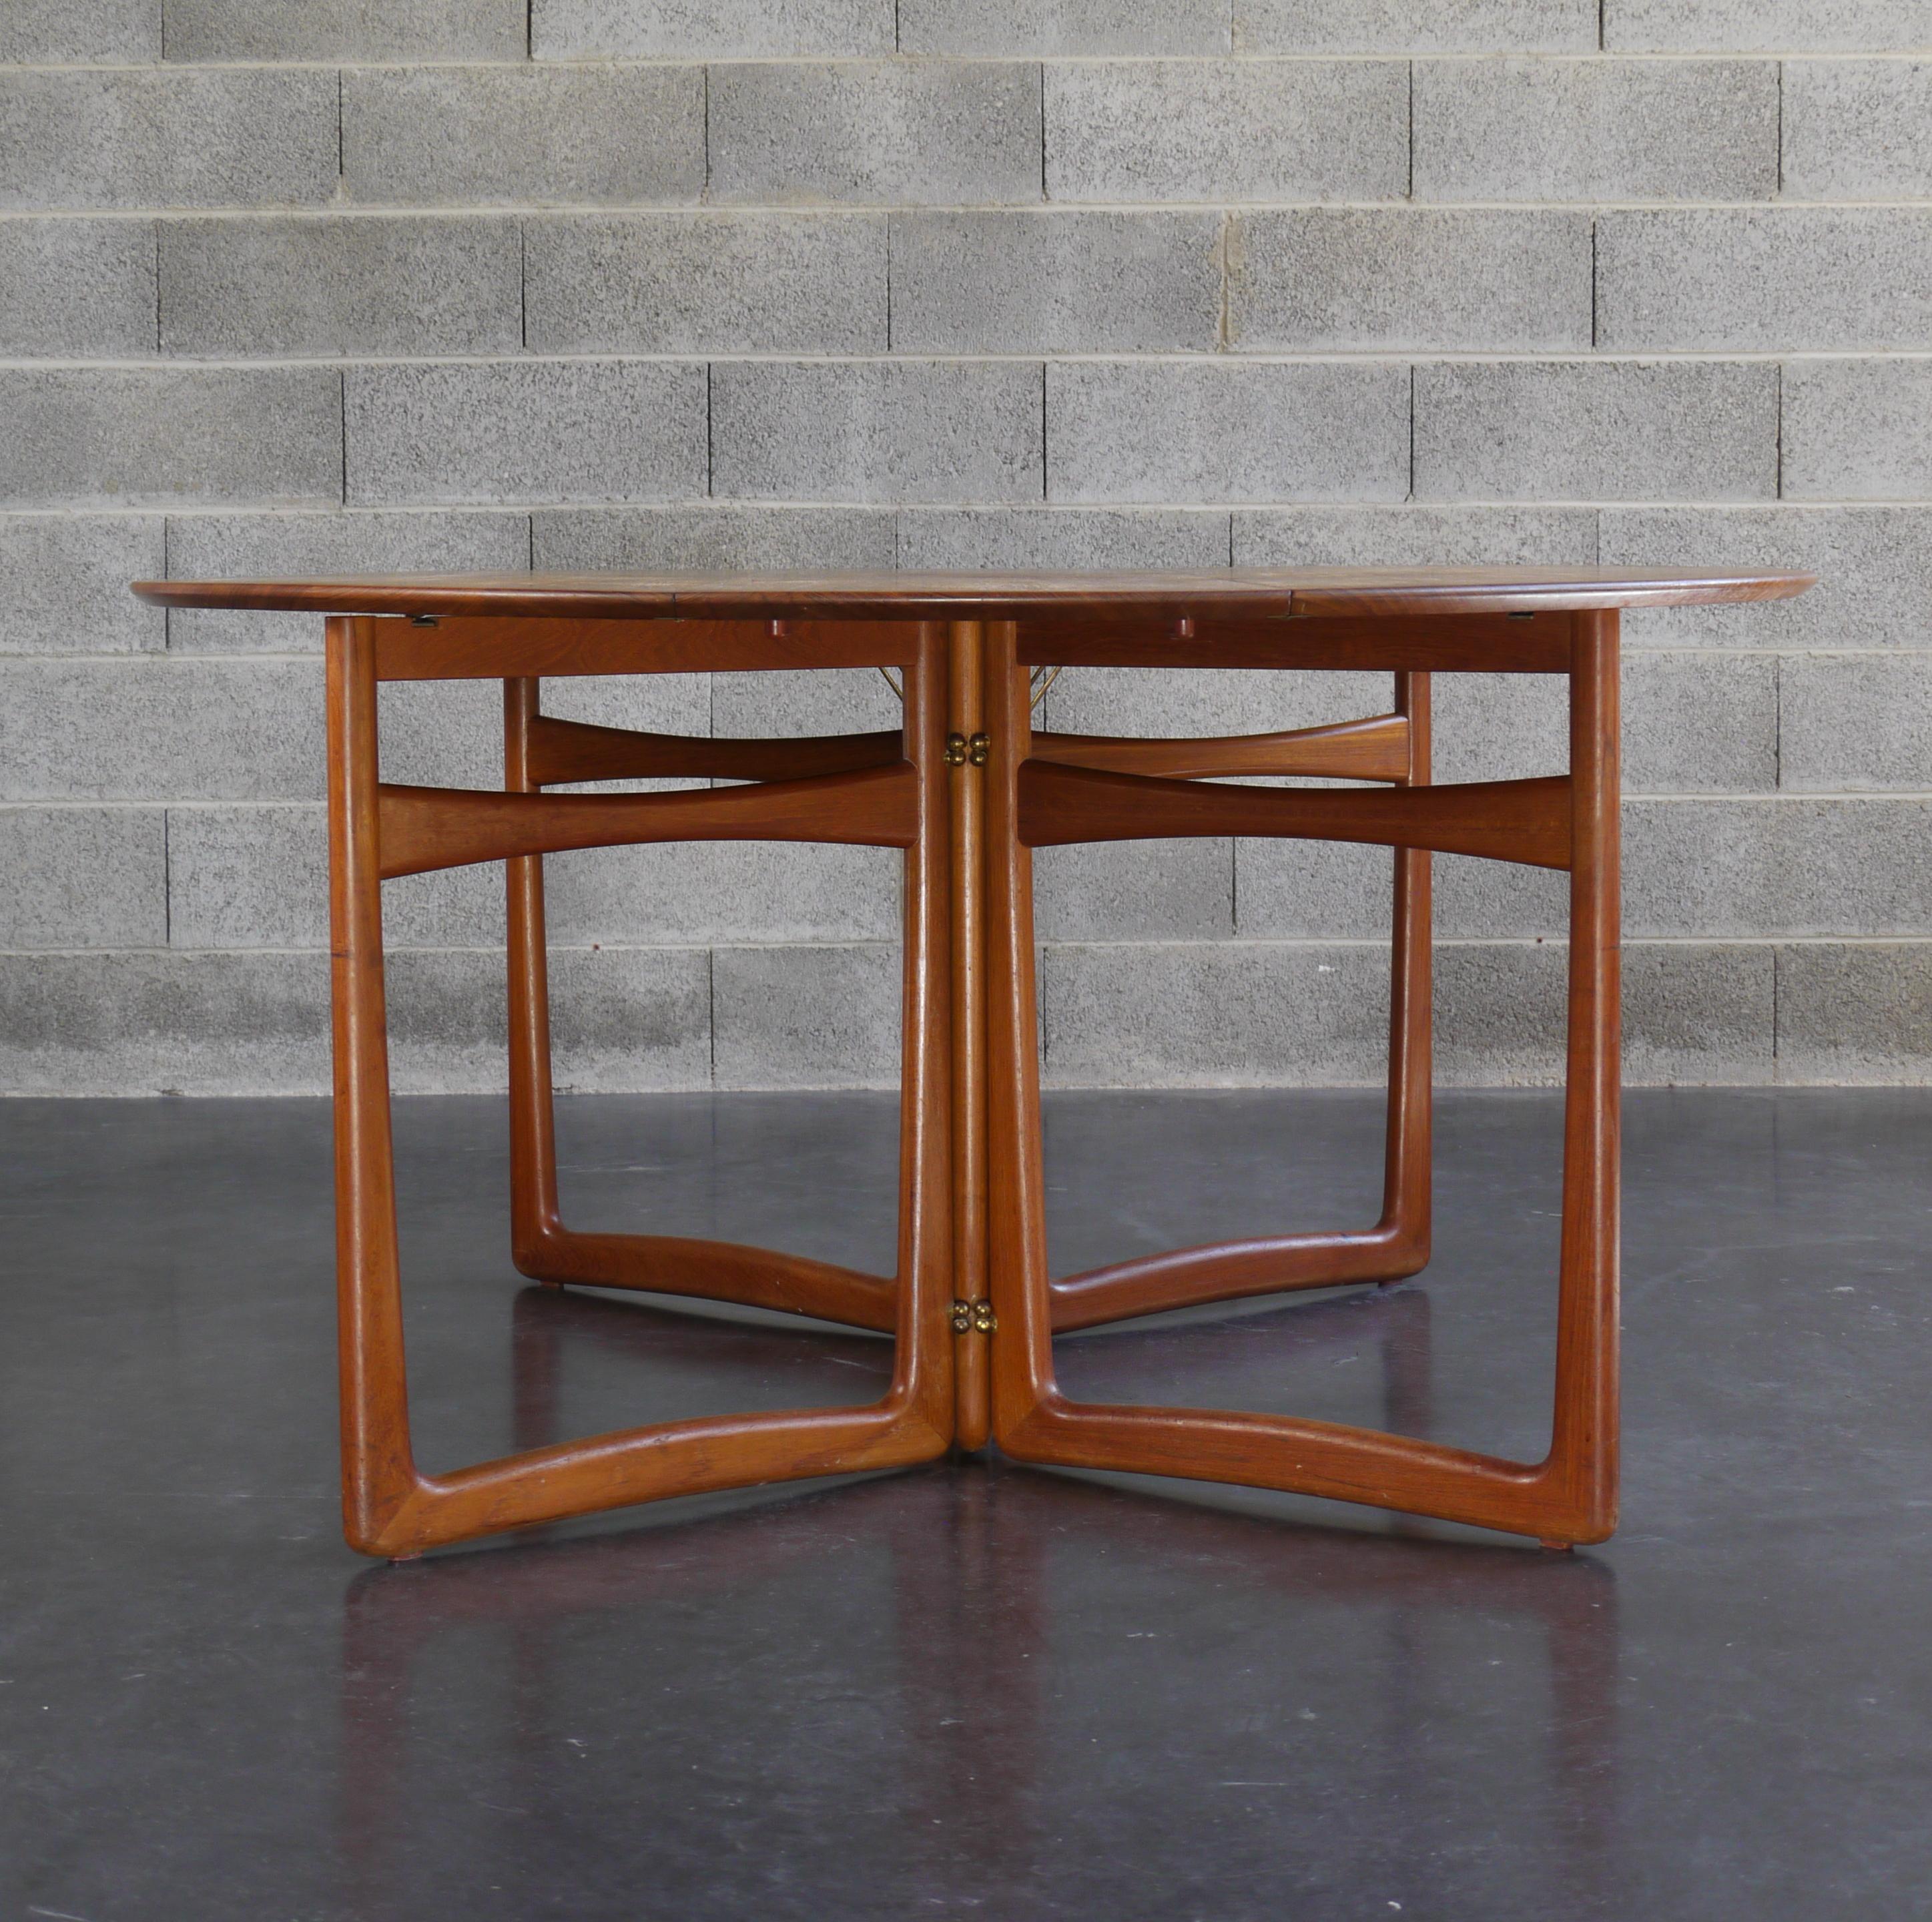 Une table de salle à manger modulaire créée par le duo de designers danois emblématiques Peter Hvidt et Orla Mølgaard Nielsen. Fabriqué au Danemark par France & Søn vers les années 1950. Les feuilles supplémentaires aux deux extrémités permettent